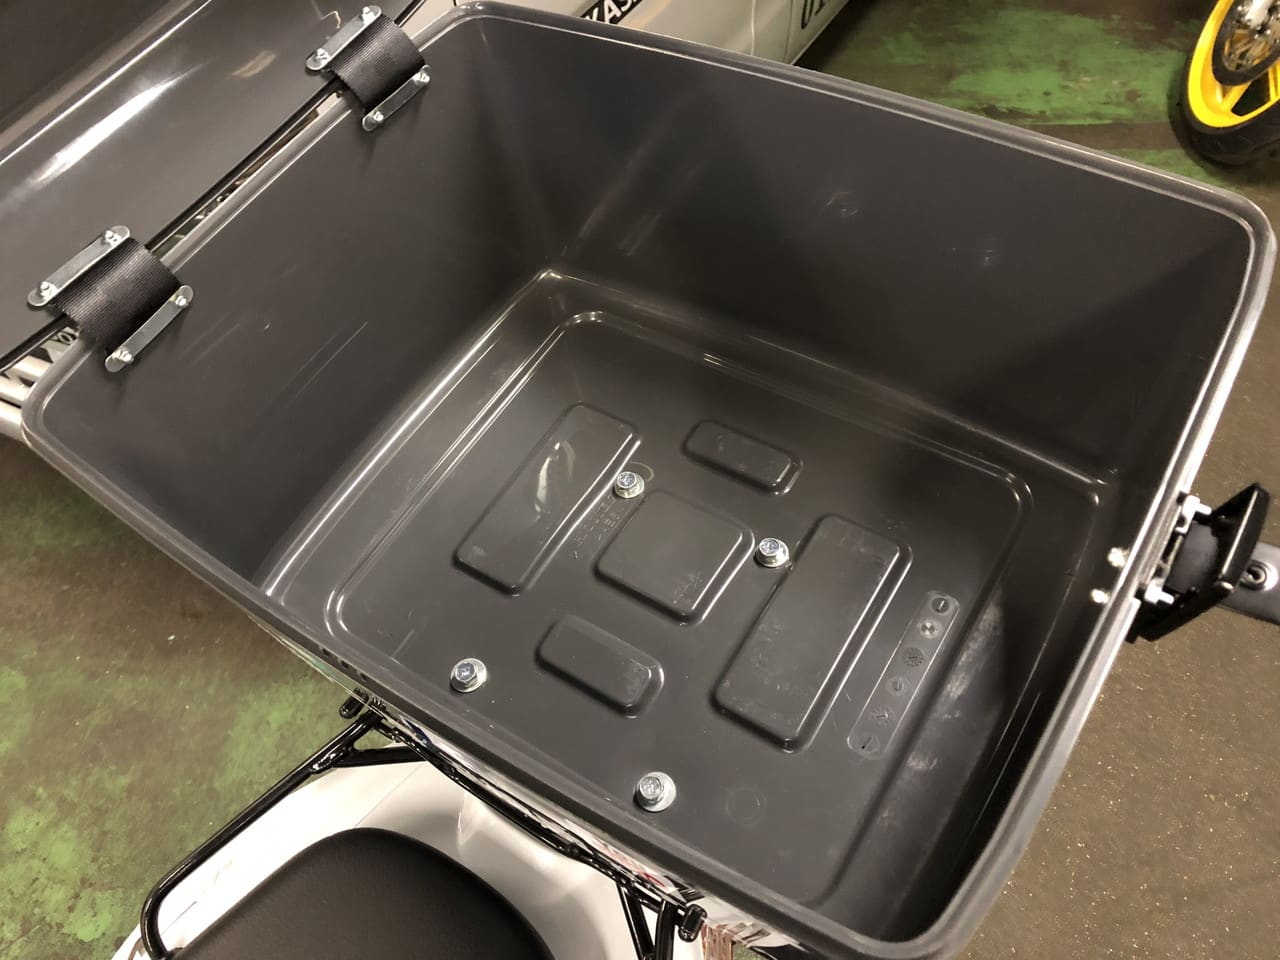 洗車道具を入れるバイク用ボックスのサイズ 洗車ビジネス相談室 笠井工房ブログ